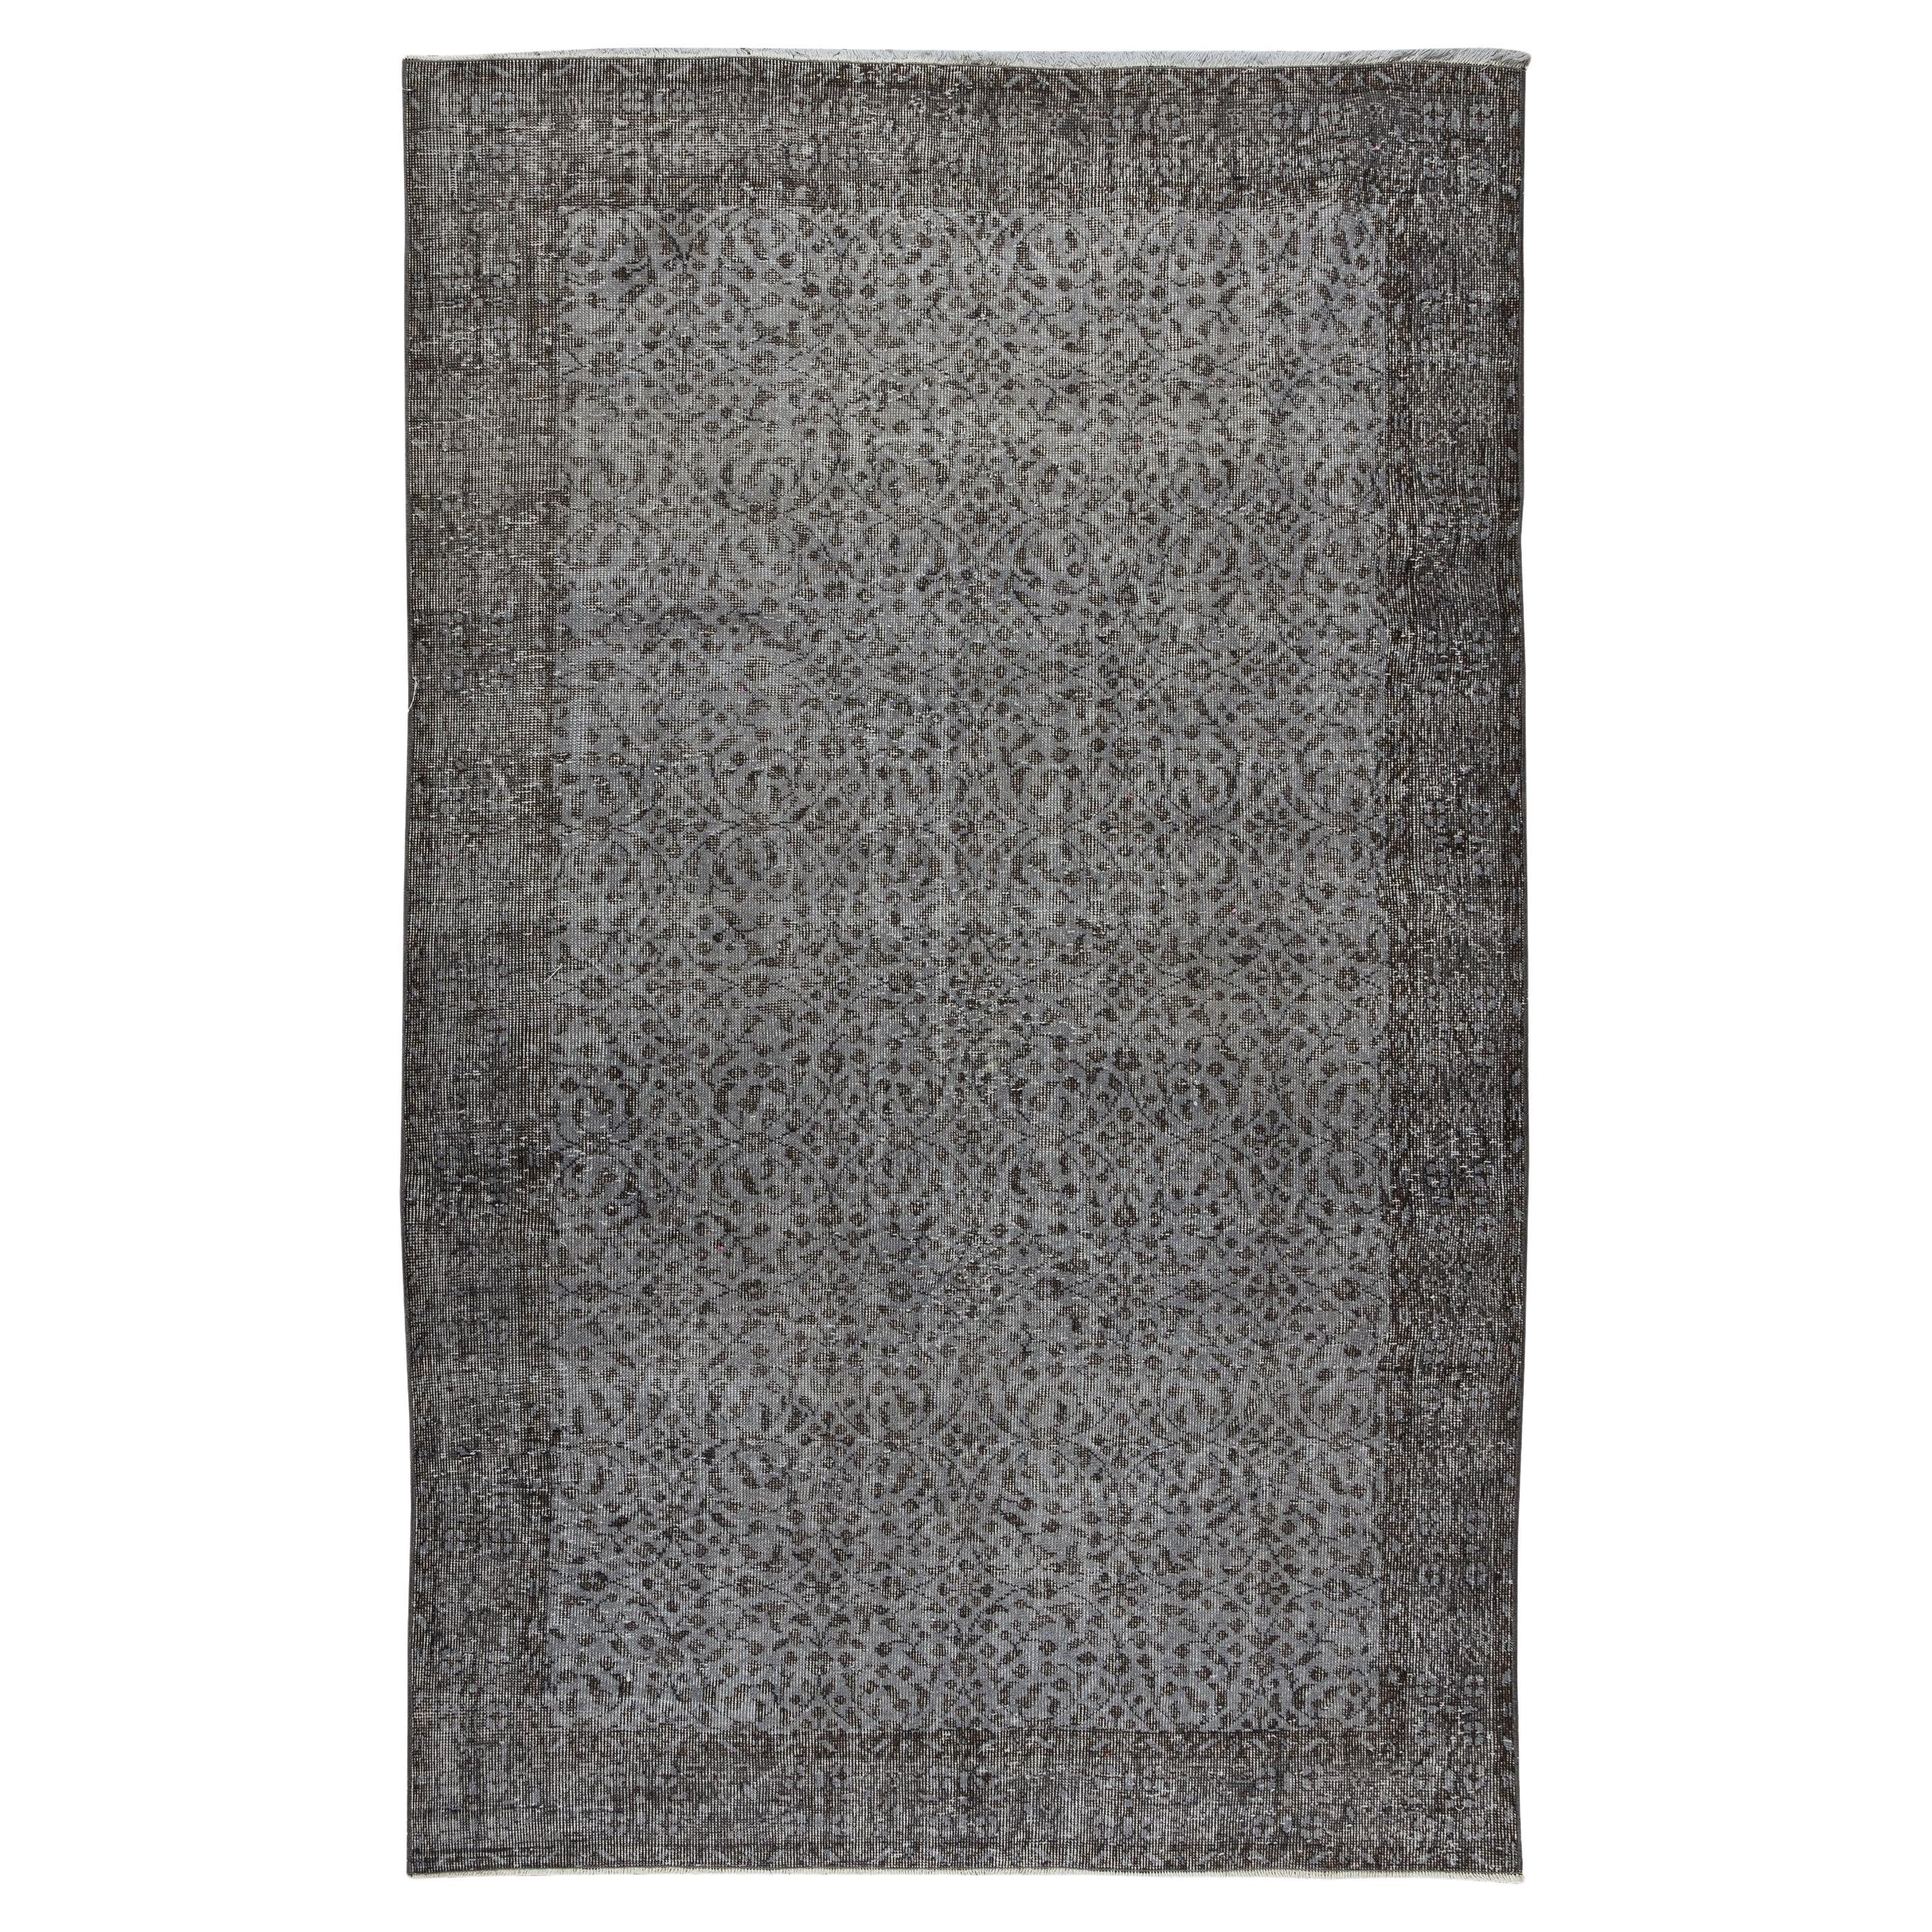 Zeitgenössischer türkischer Teppich in Grau,5.6x8.9 Ft, neu gefärbt, Vintage